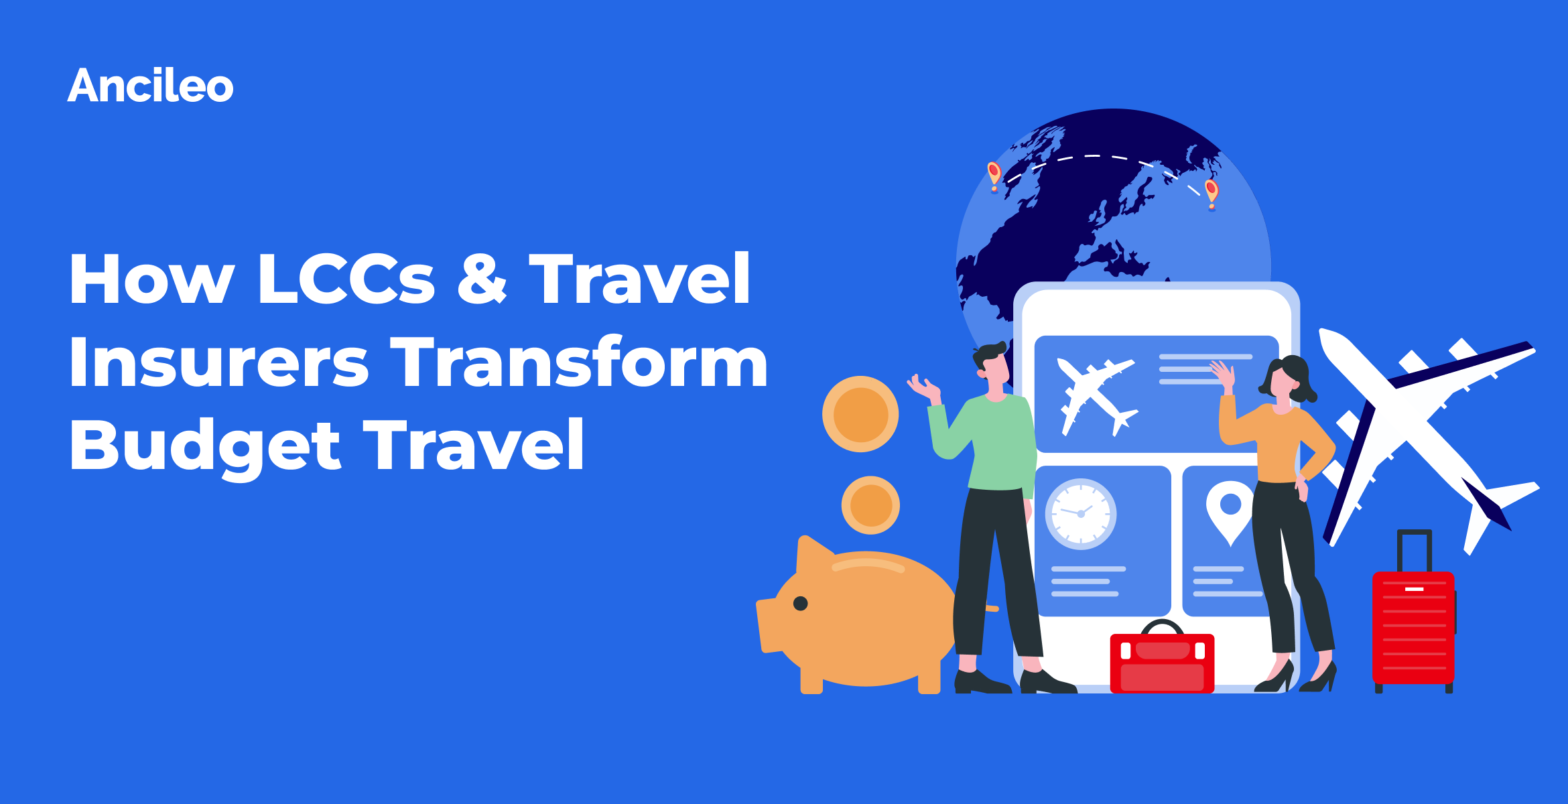 How LCCs & Travel Insurers Transform Budget Travel